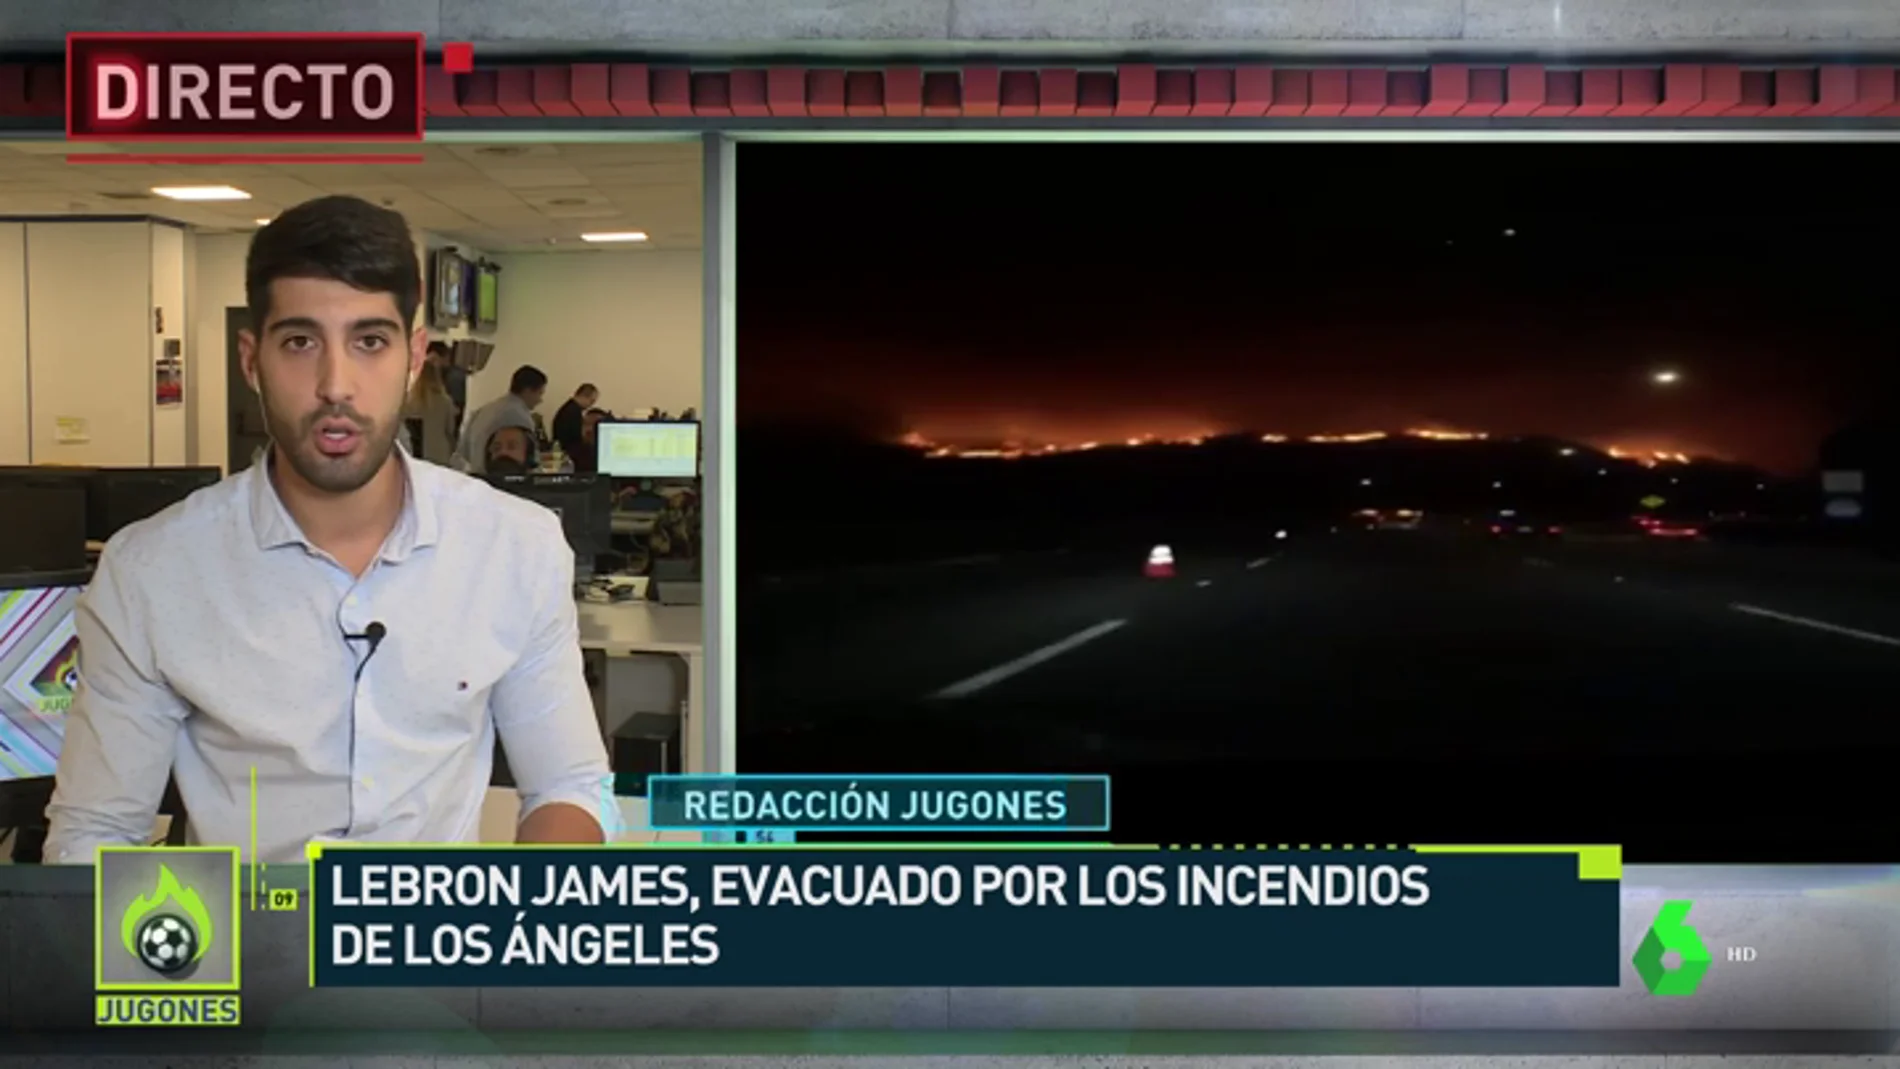 LeBron James, evacuado por los incendios en California: "Qué noche loca"